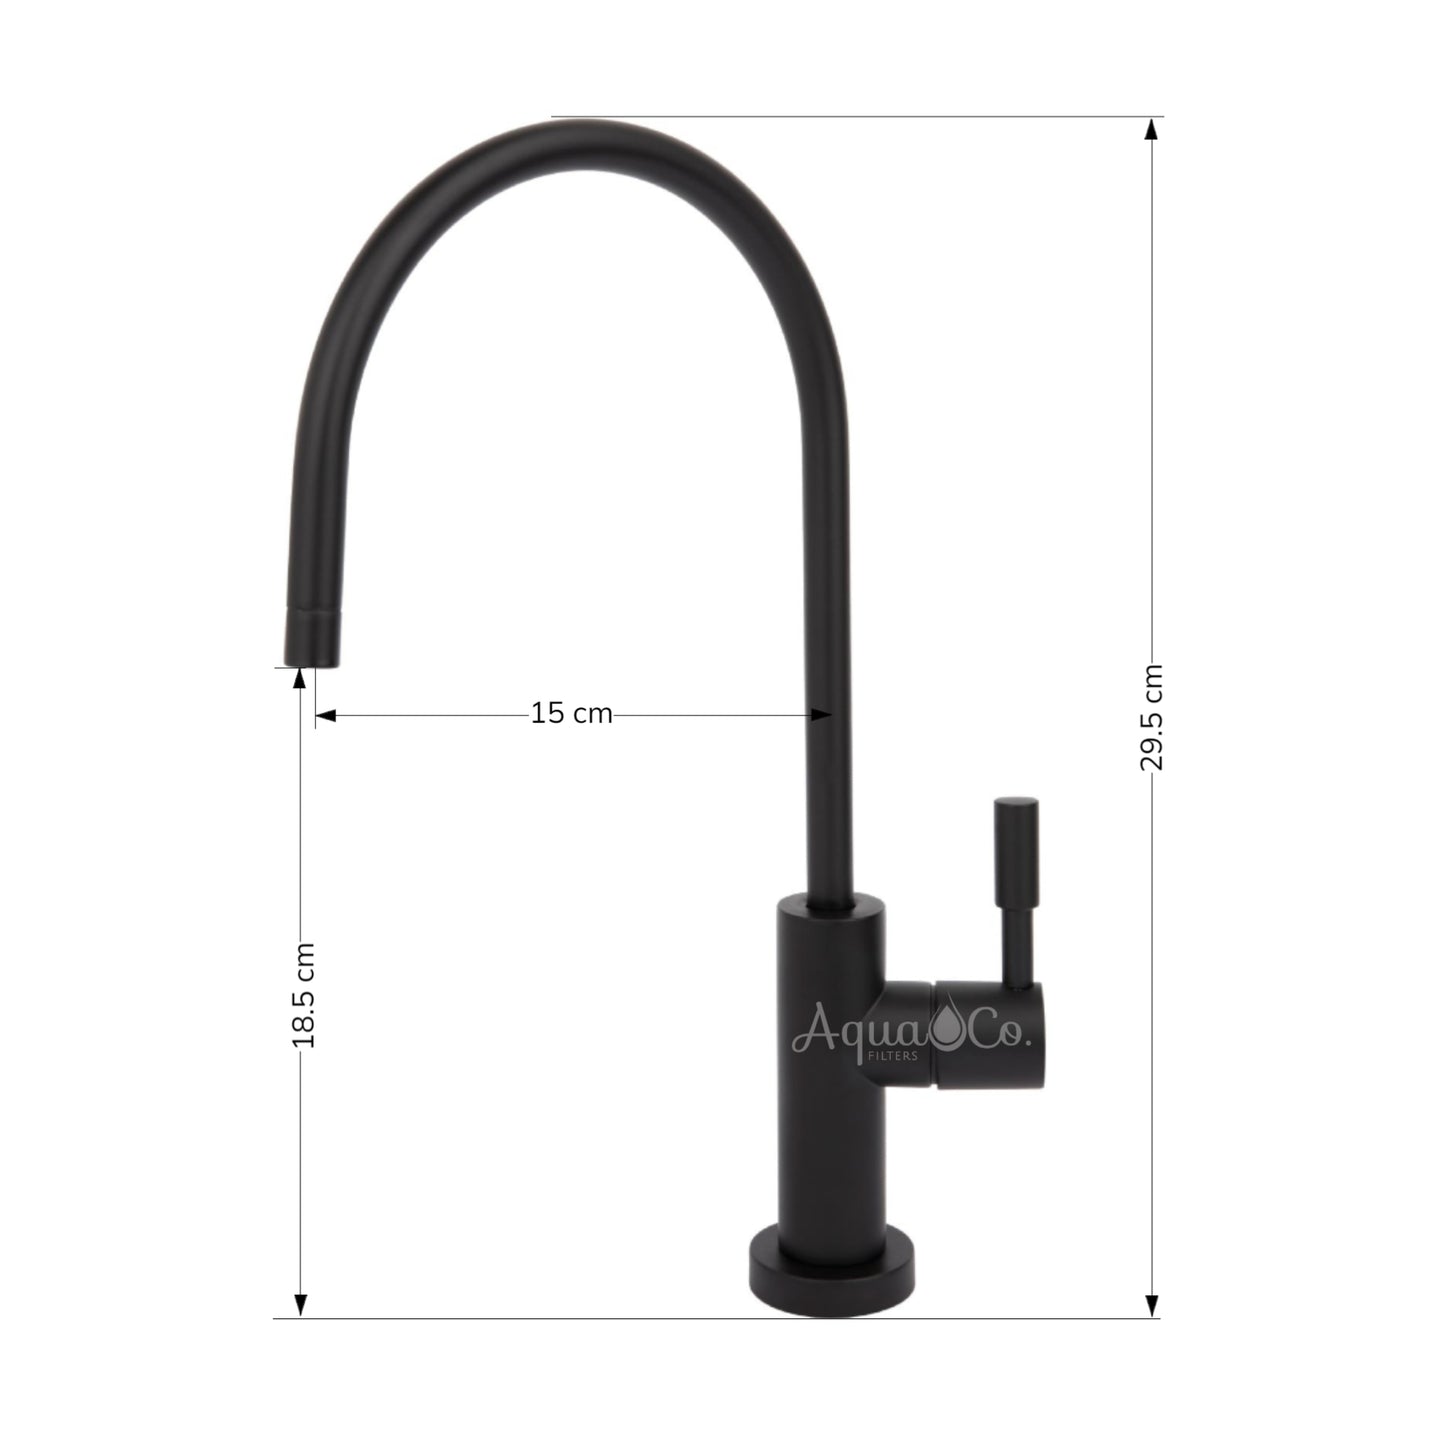 AquaCo Matte Black High Loop Water Filter Tap - Model: TAP-MODE-MB